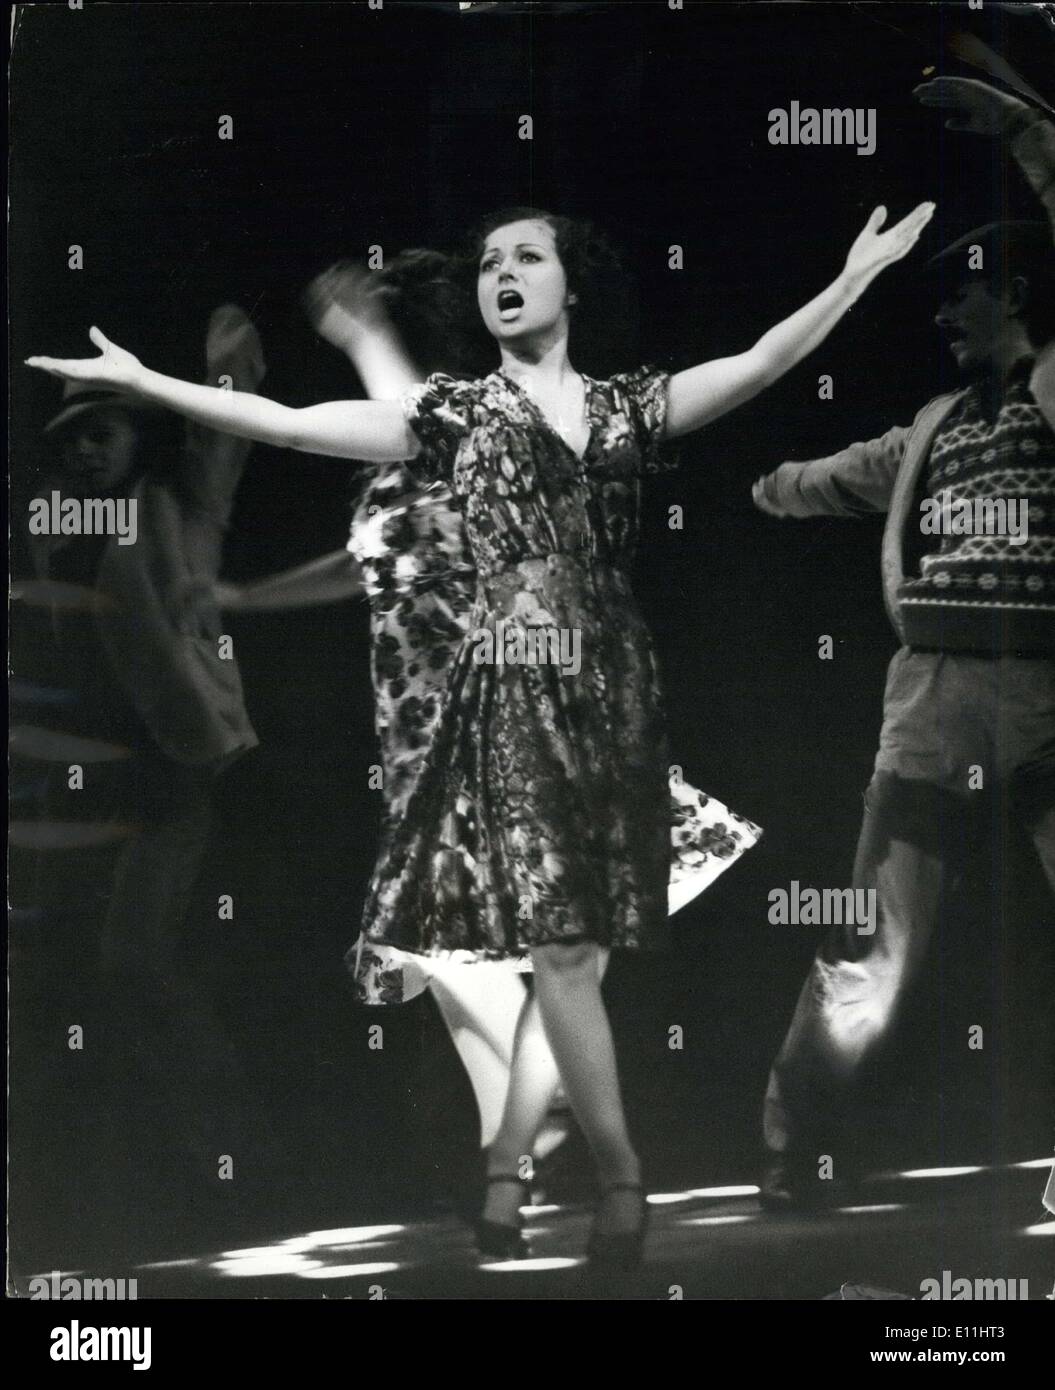 Giugno 22, 1978 - Viva Elaine-Superstar; Elaine Paige, l'attrice sconosciuta, entrati in celebrità la notte scorsa, come Ella ha raffigurato Eva Foto Stock